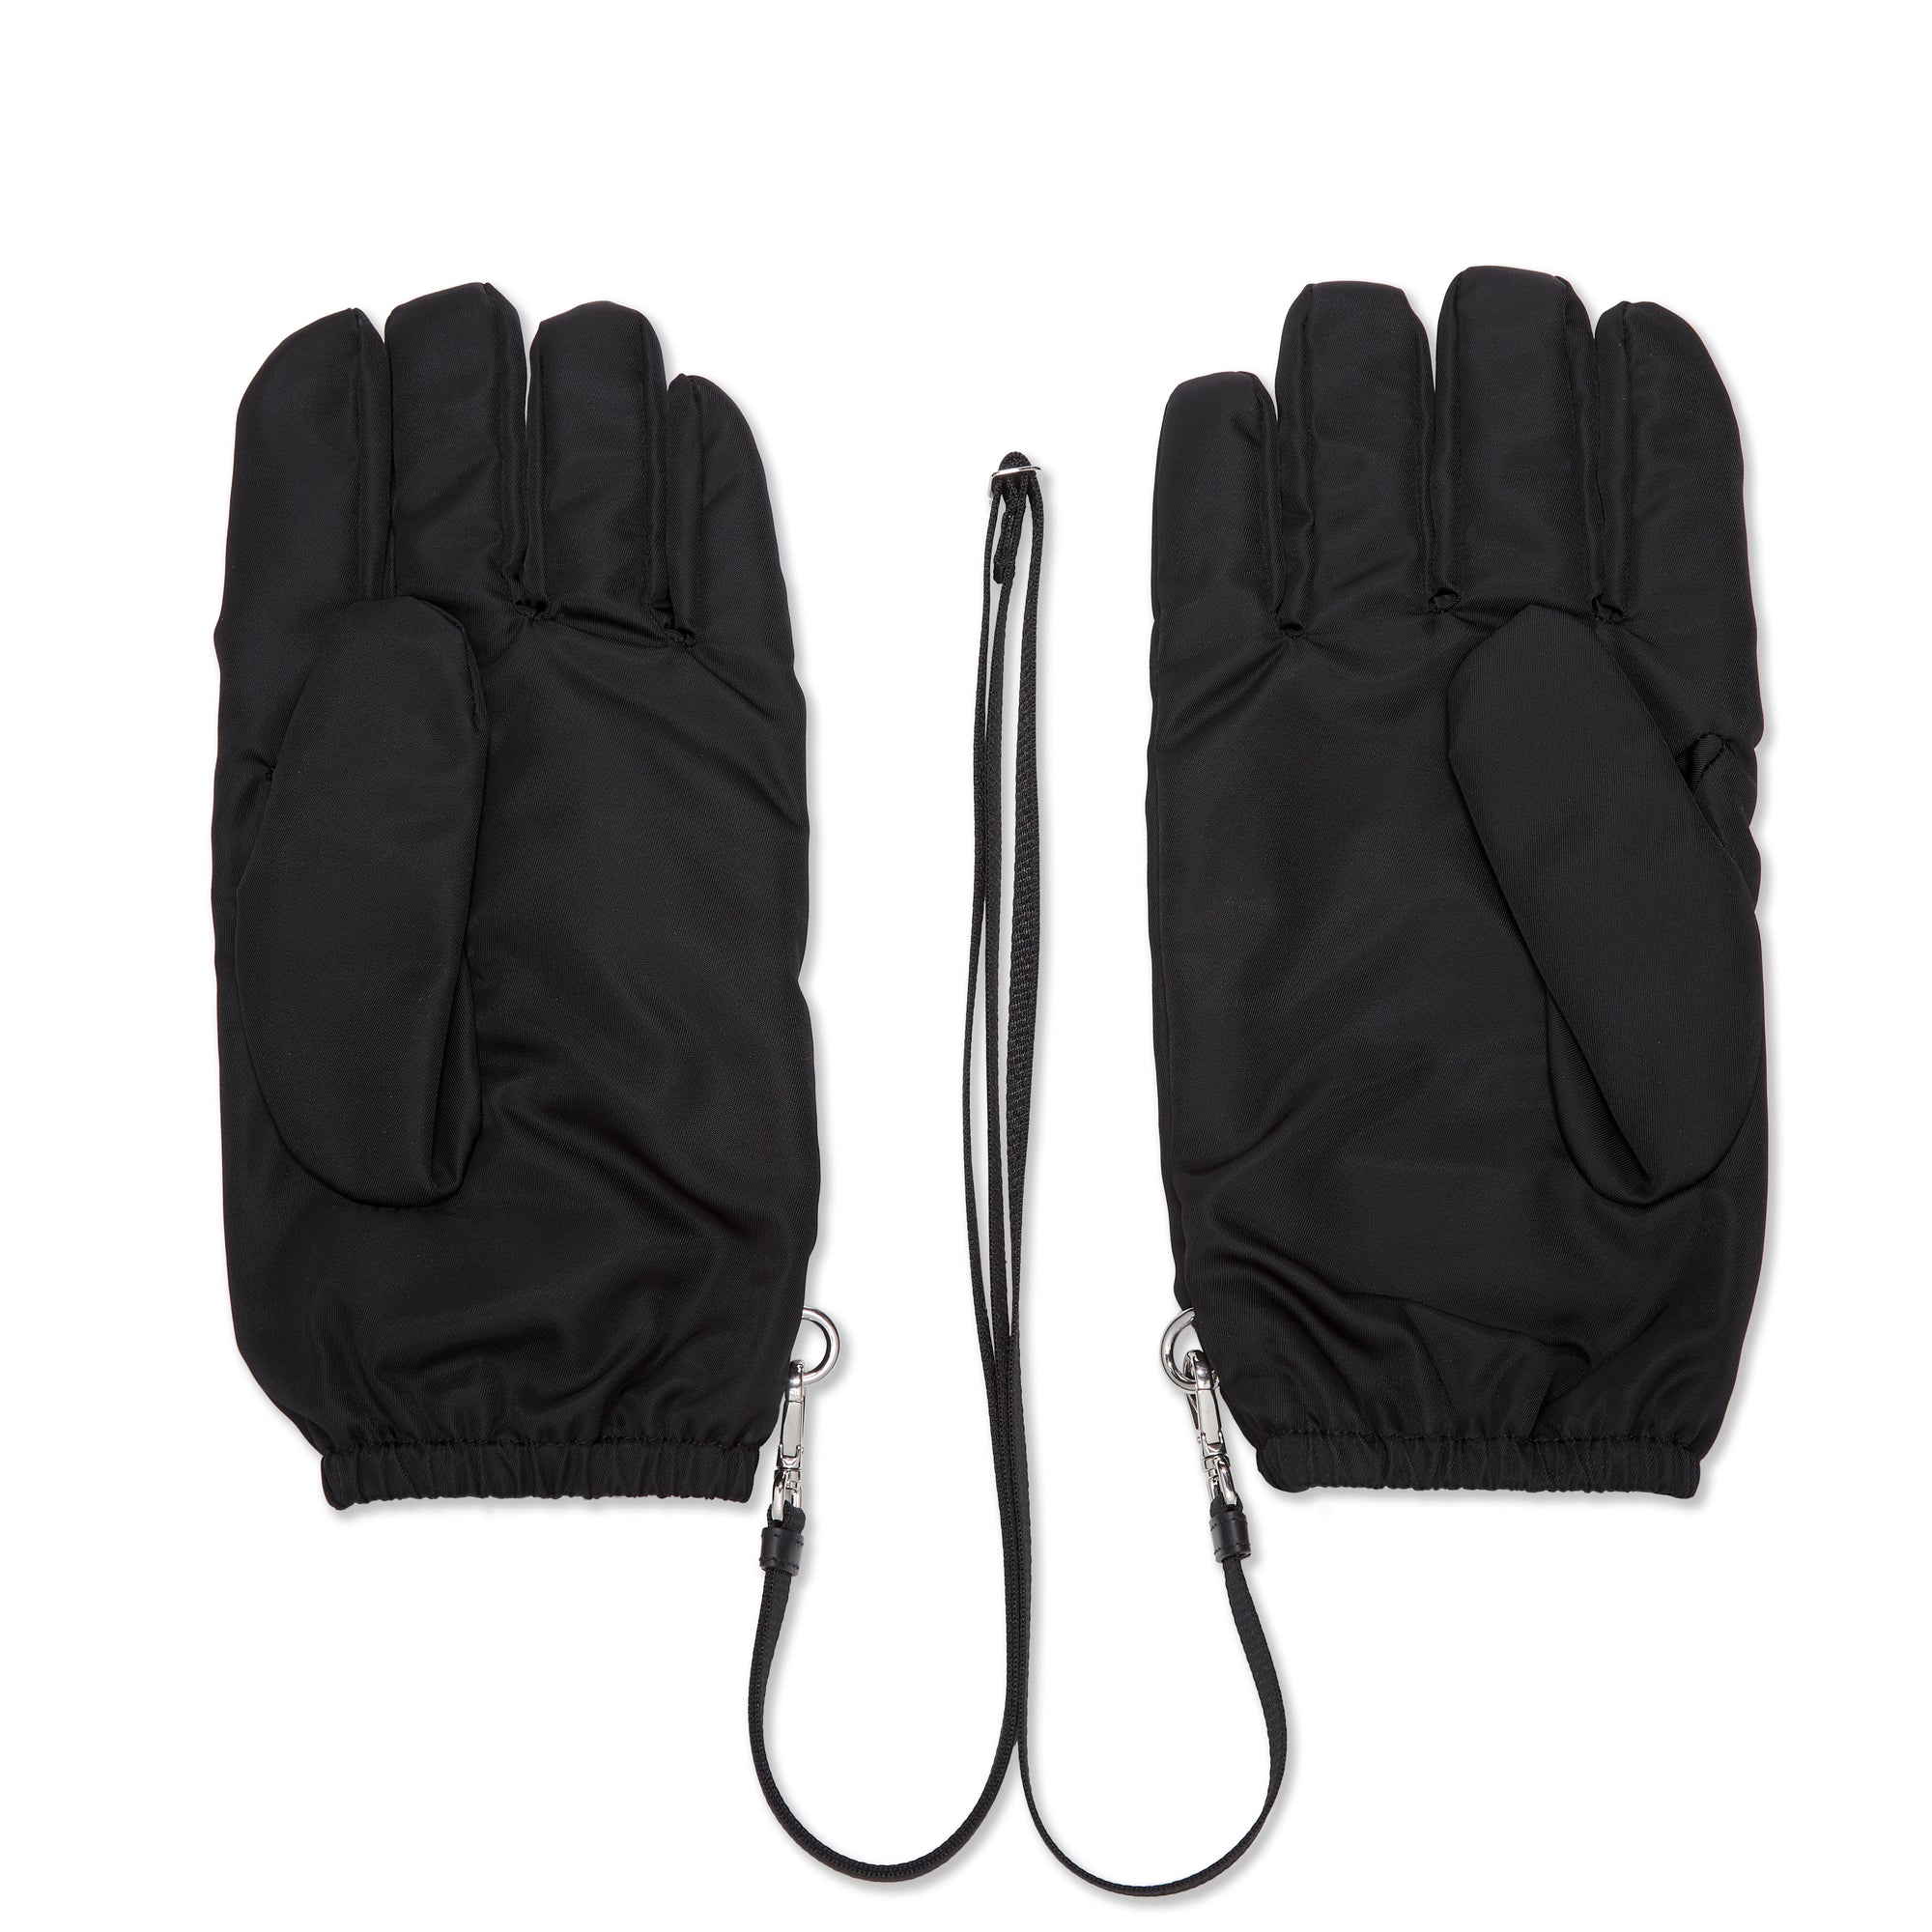 Prada - Men's Gloves - (Black) view 2